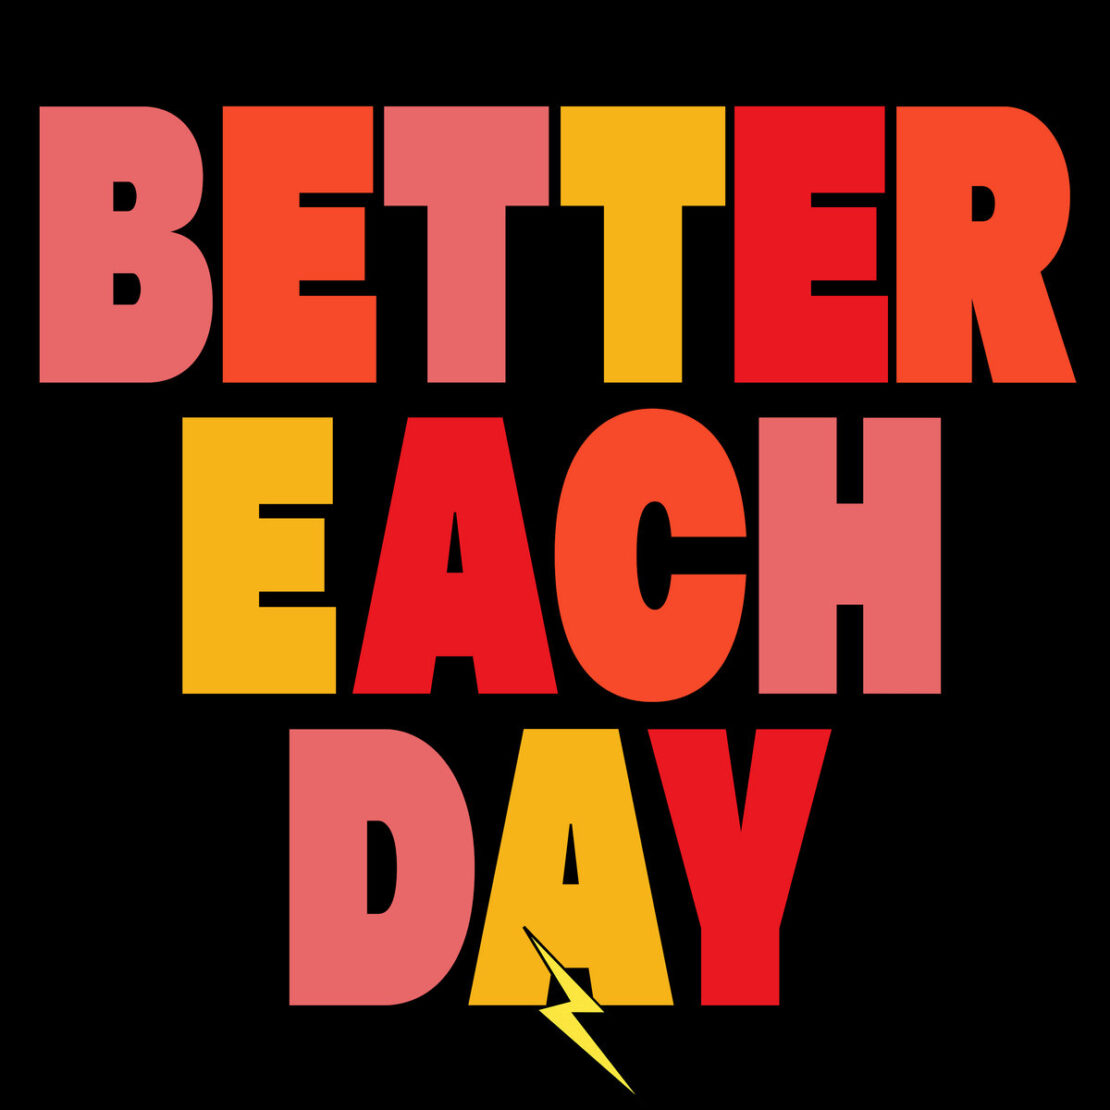 Better Each Day